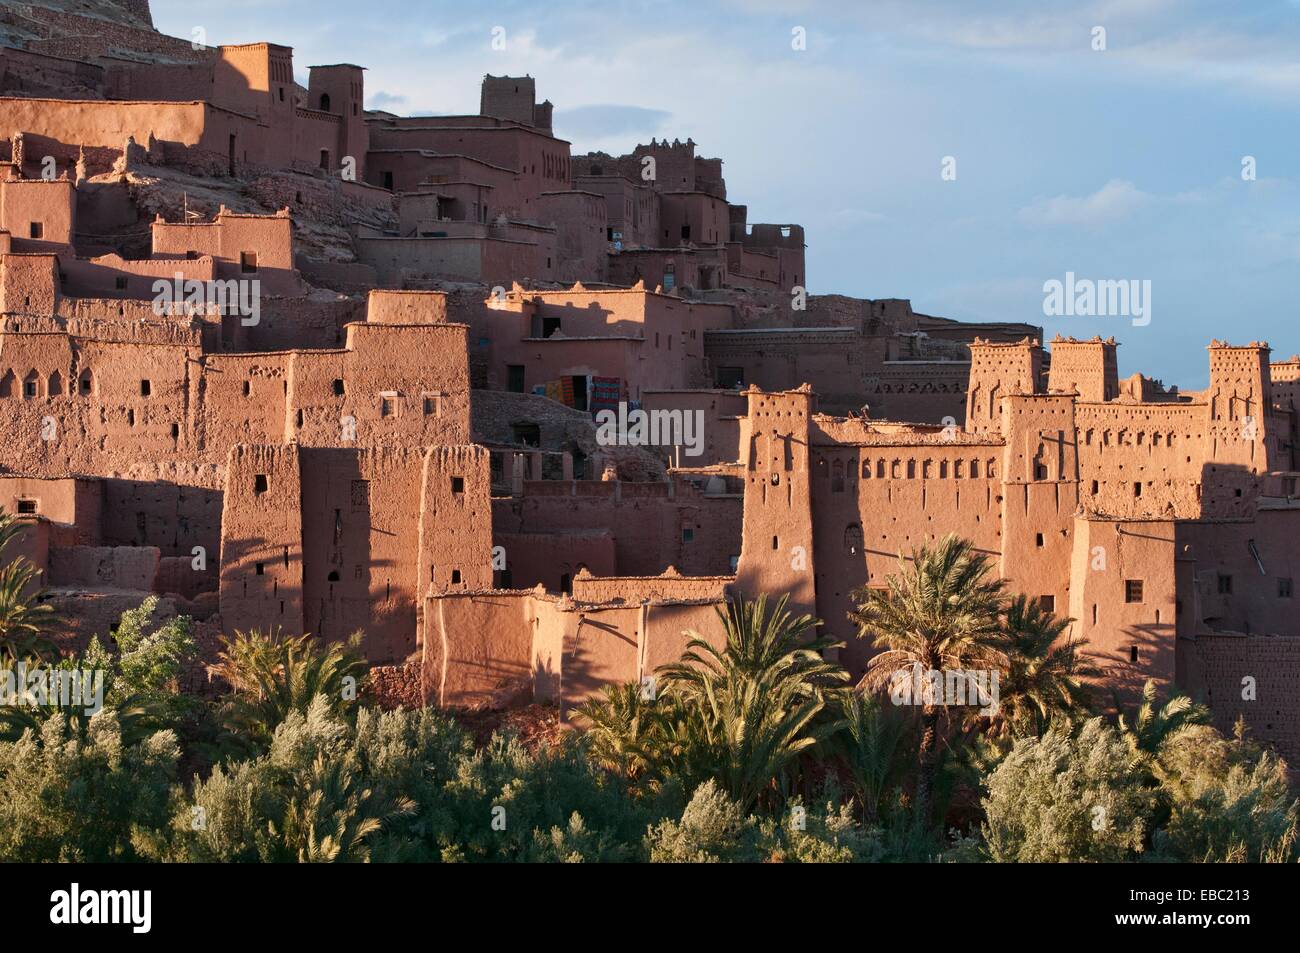 Строительство городов из глины страна. Айт-Бен-Хадду Марокко. Ксар айт-Бен-Хадду, глиняная крепость Магриба. Айт-Бен-Хадду Марокко фото. Город Шибам в Йемене.